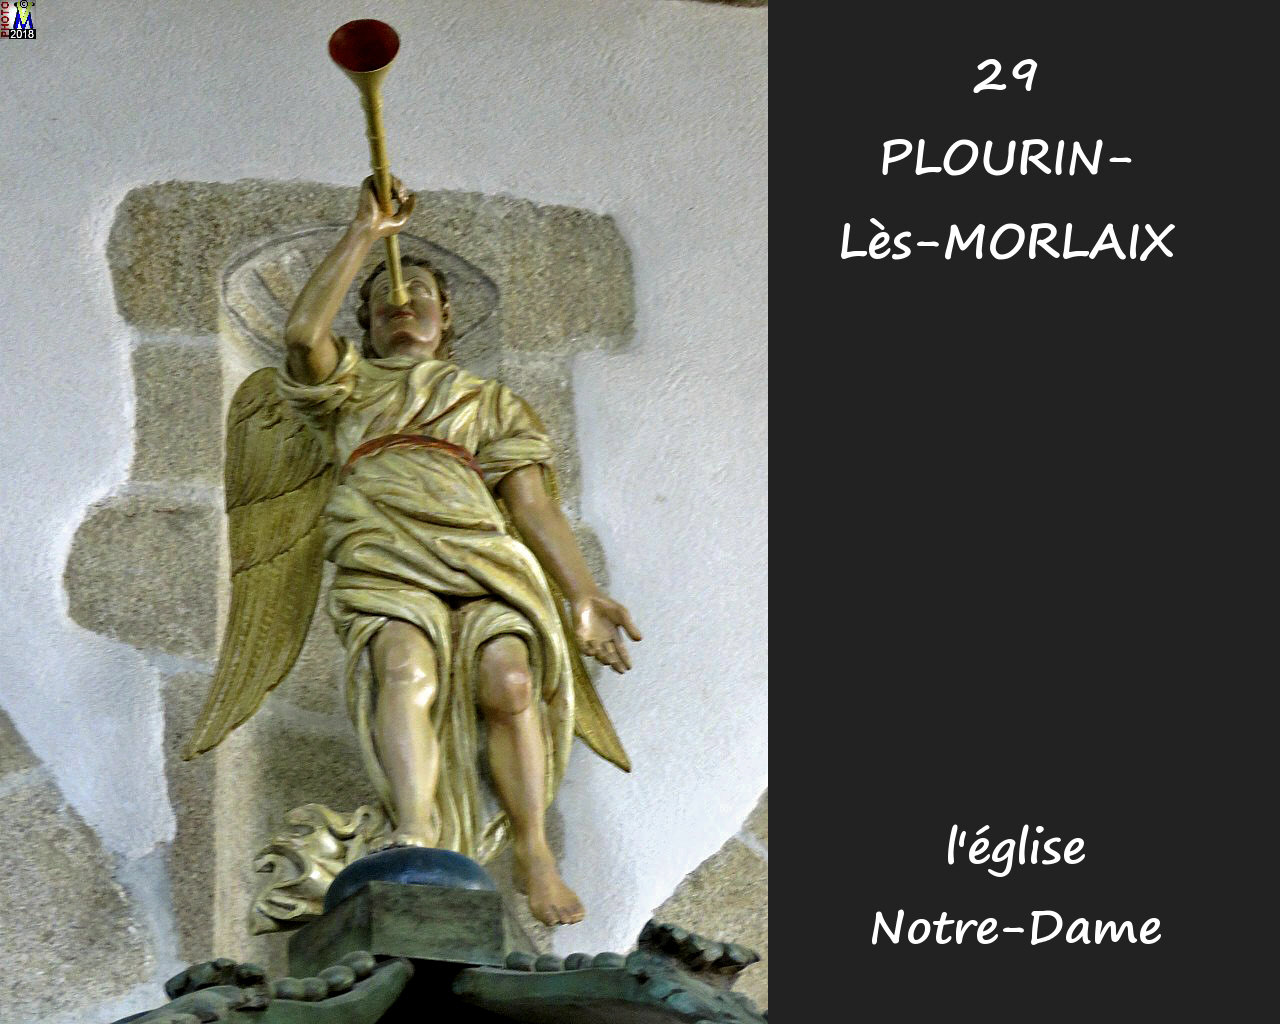 29PLOURIN-MORLAIX_eglise_282.jpg